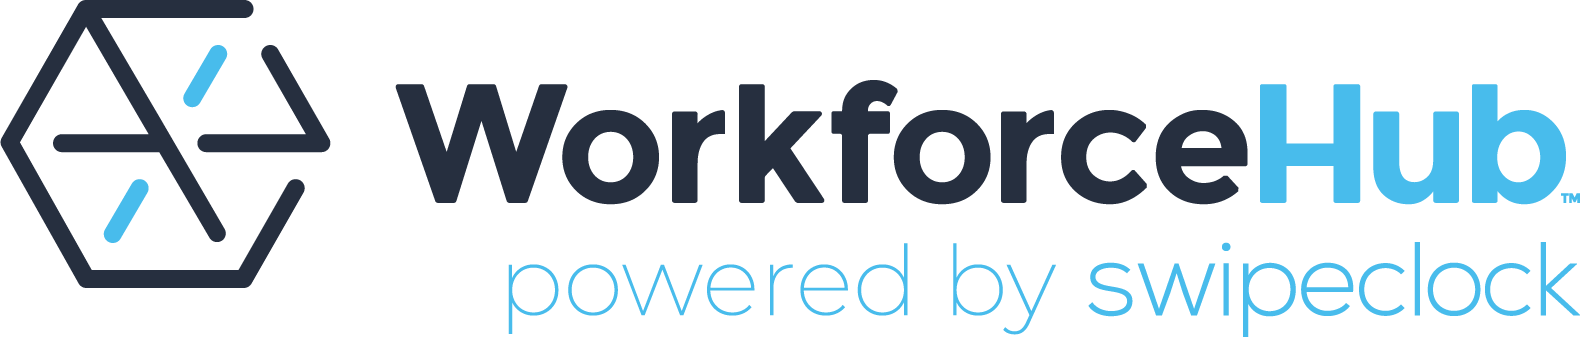 Workforce Hub